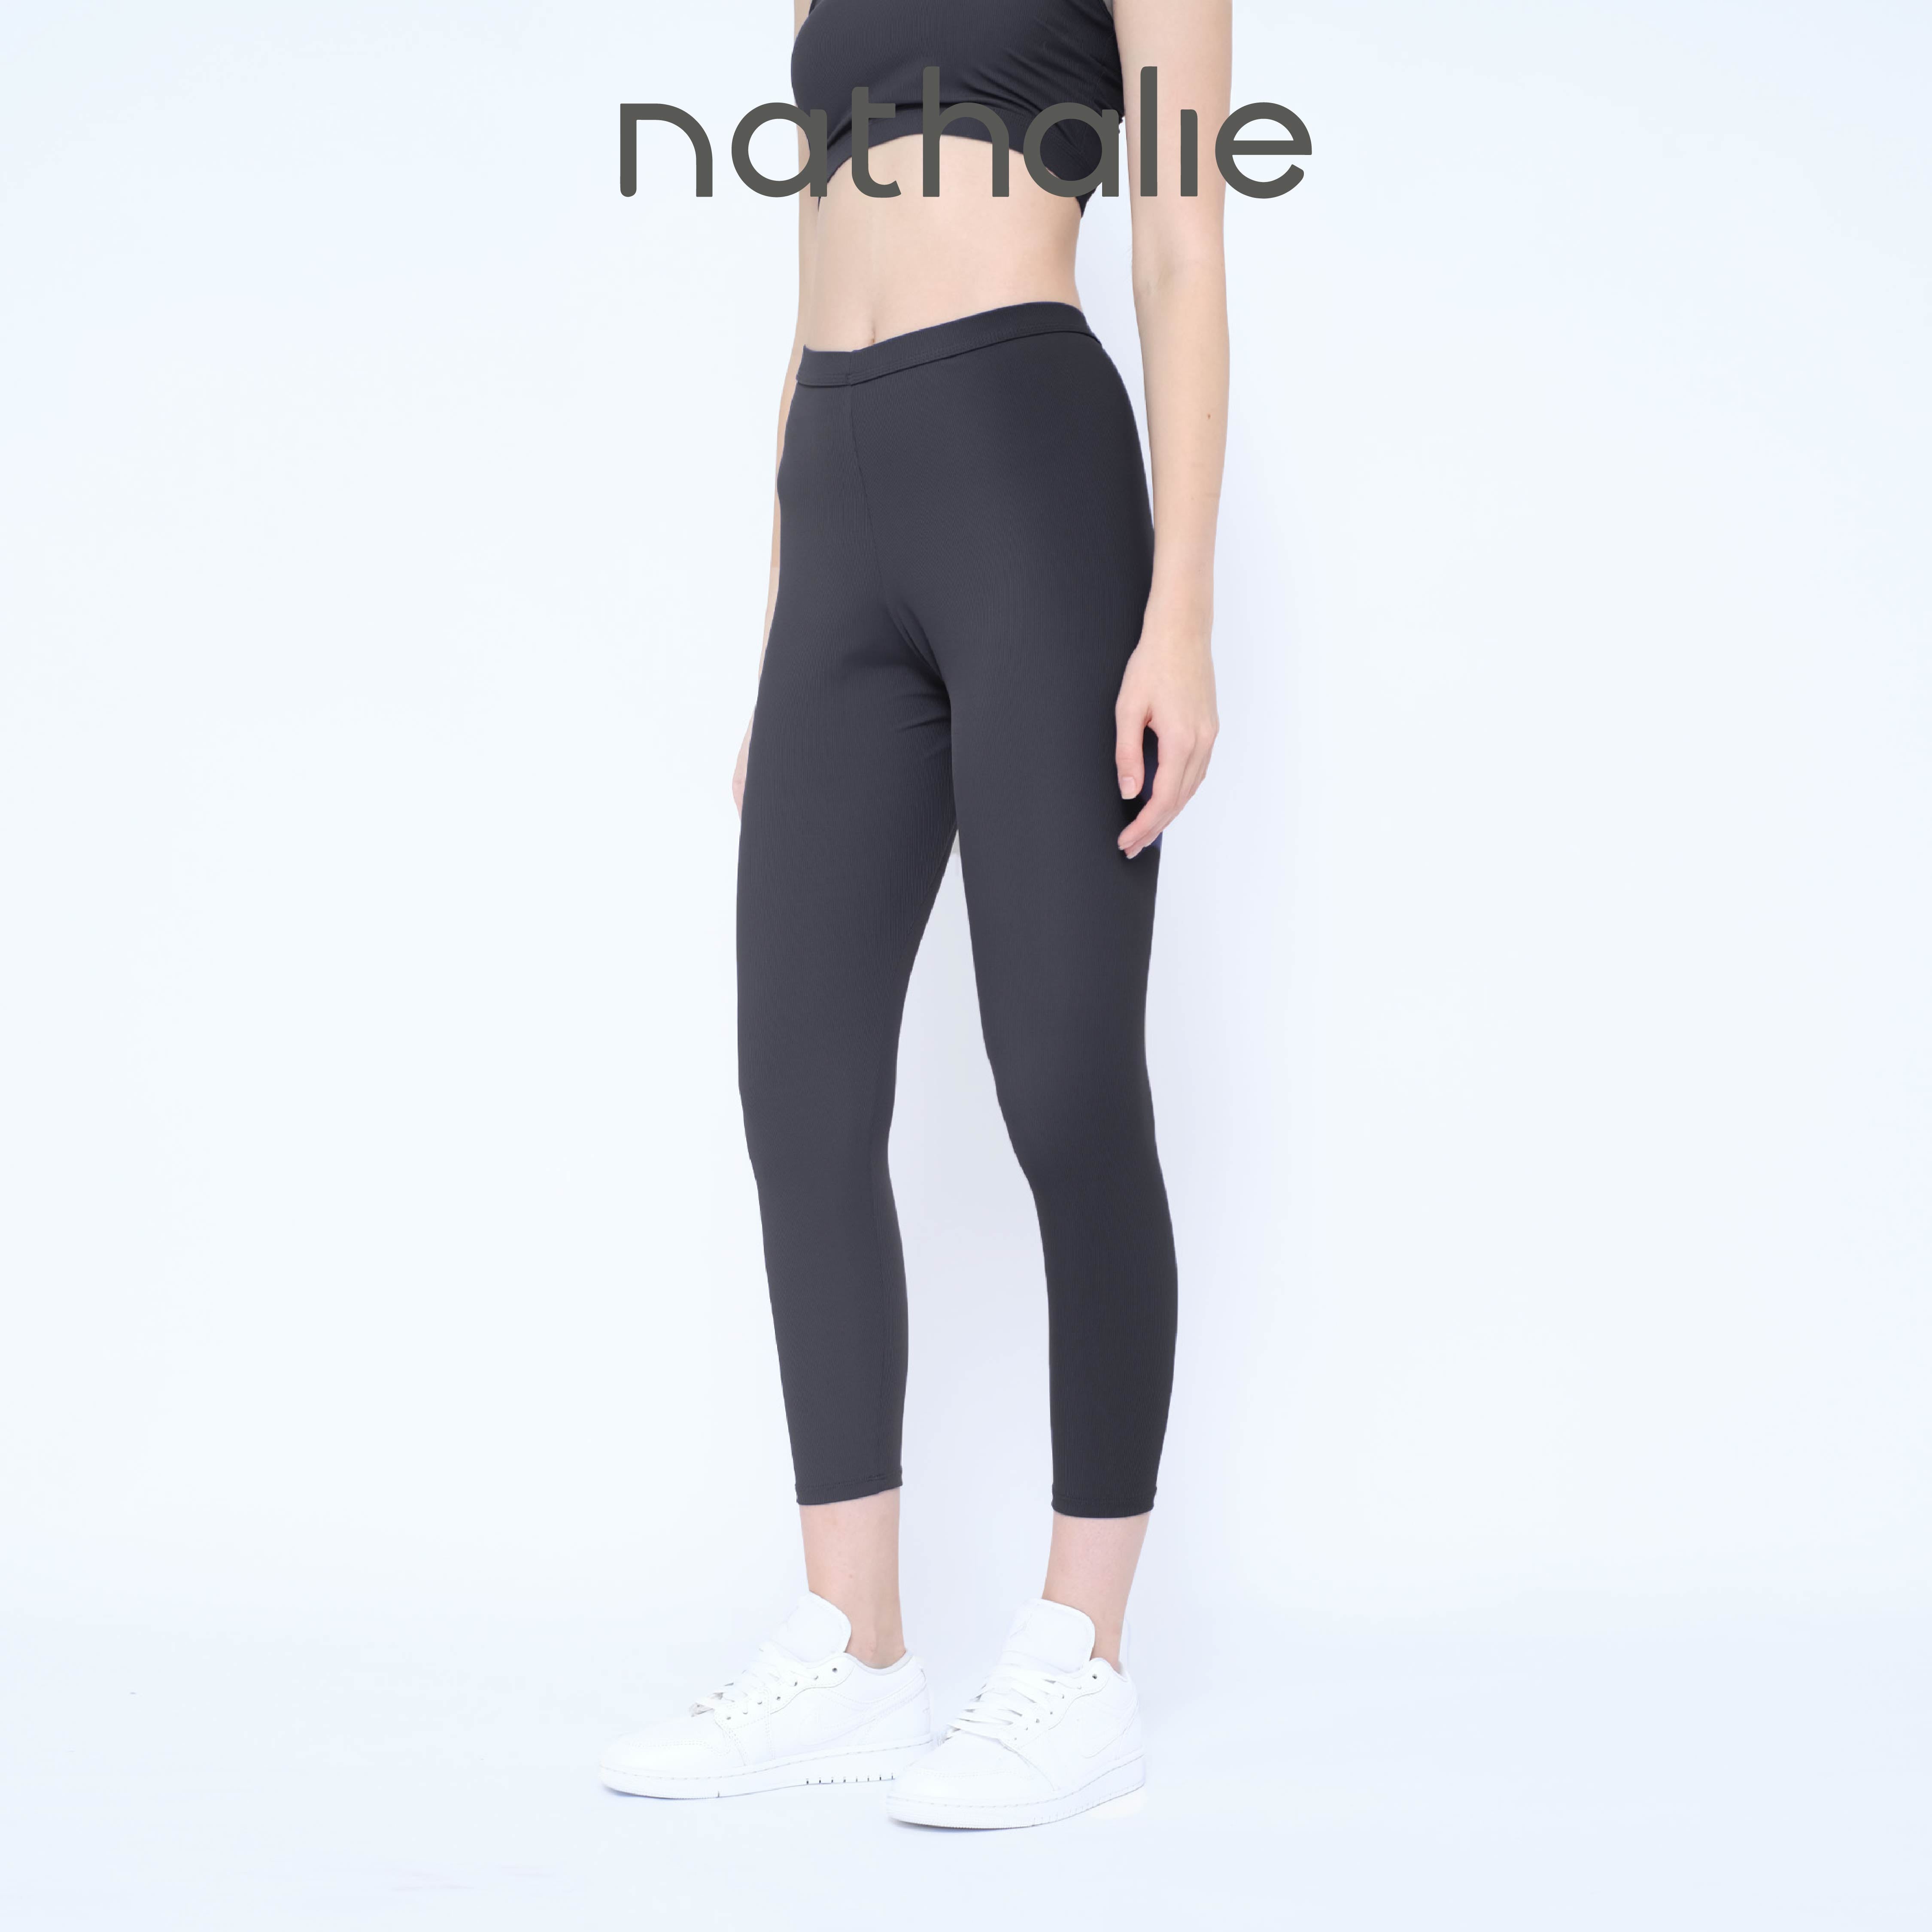 Nathalie Celana Panjang Olahraga Wanita Yoga Ice Silk Rib Legging Pants 1 Pcs NTC 3461